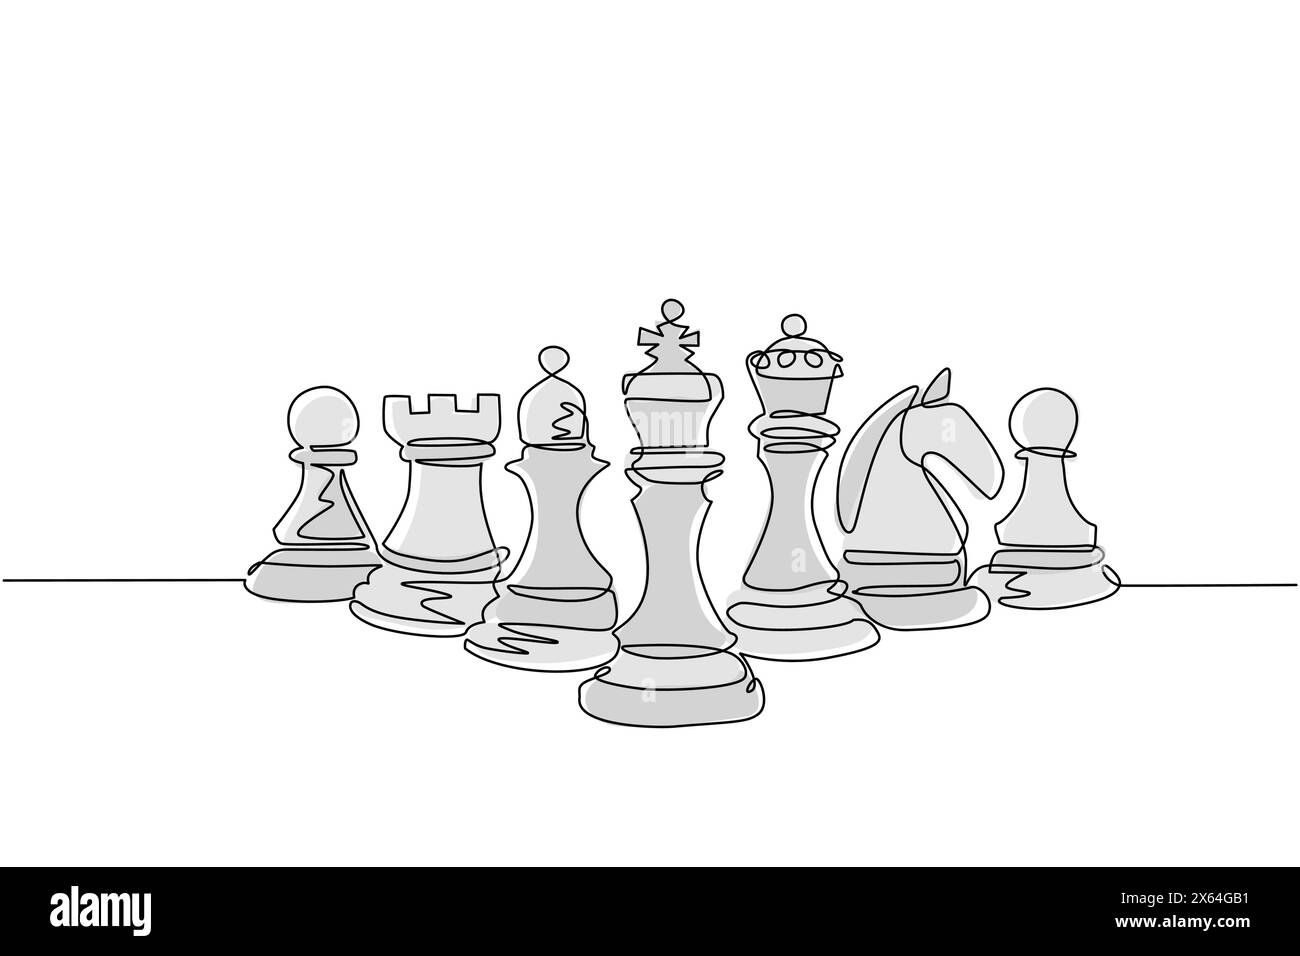 Simple une ligne dessinant des pièces d'échecs alignées, luxe dessiné à la main ou gravure. Roi, reine, évêque, chevalier, tour, pion. Concept de réussite de leader. Continue Illustration de Vecteur